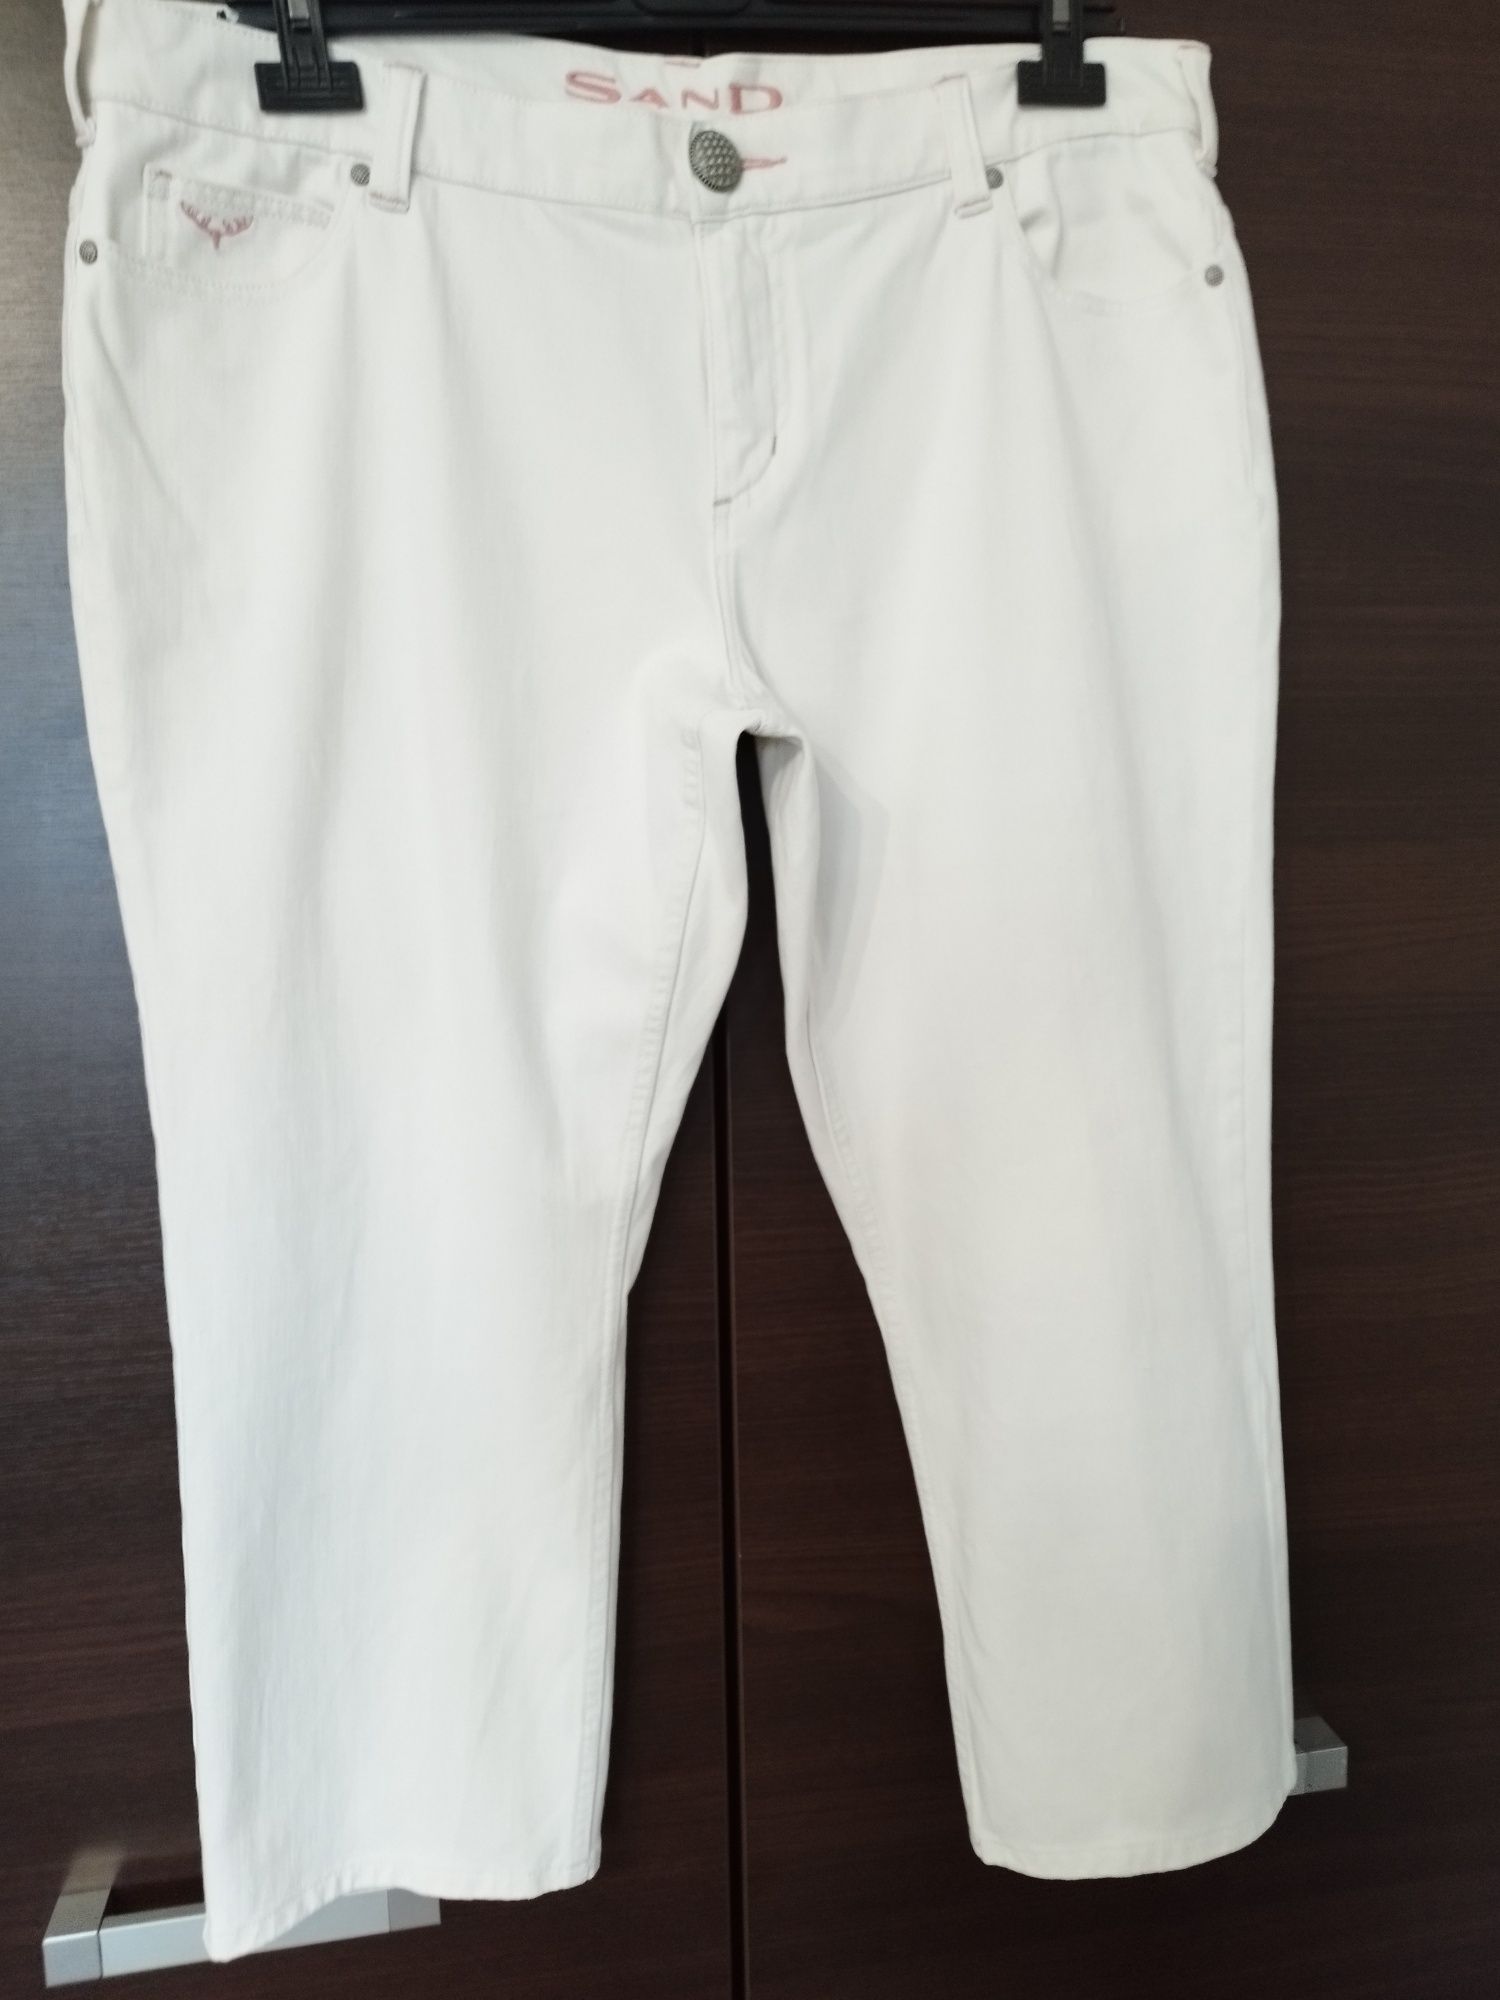 Białe spodnie wysoki stan rm 48,50